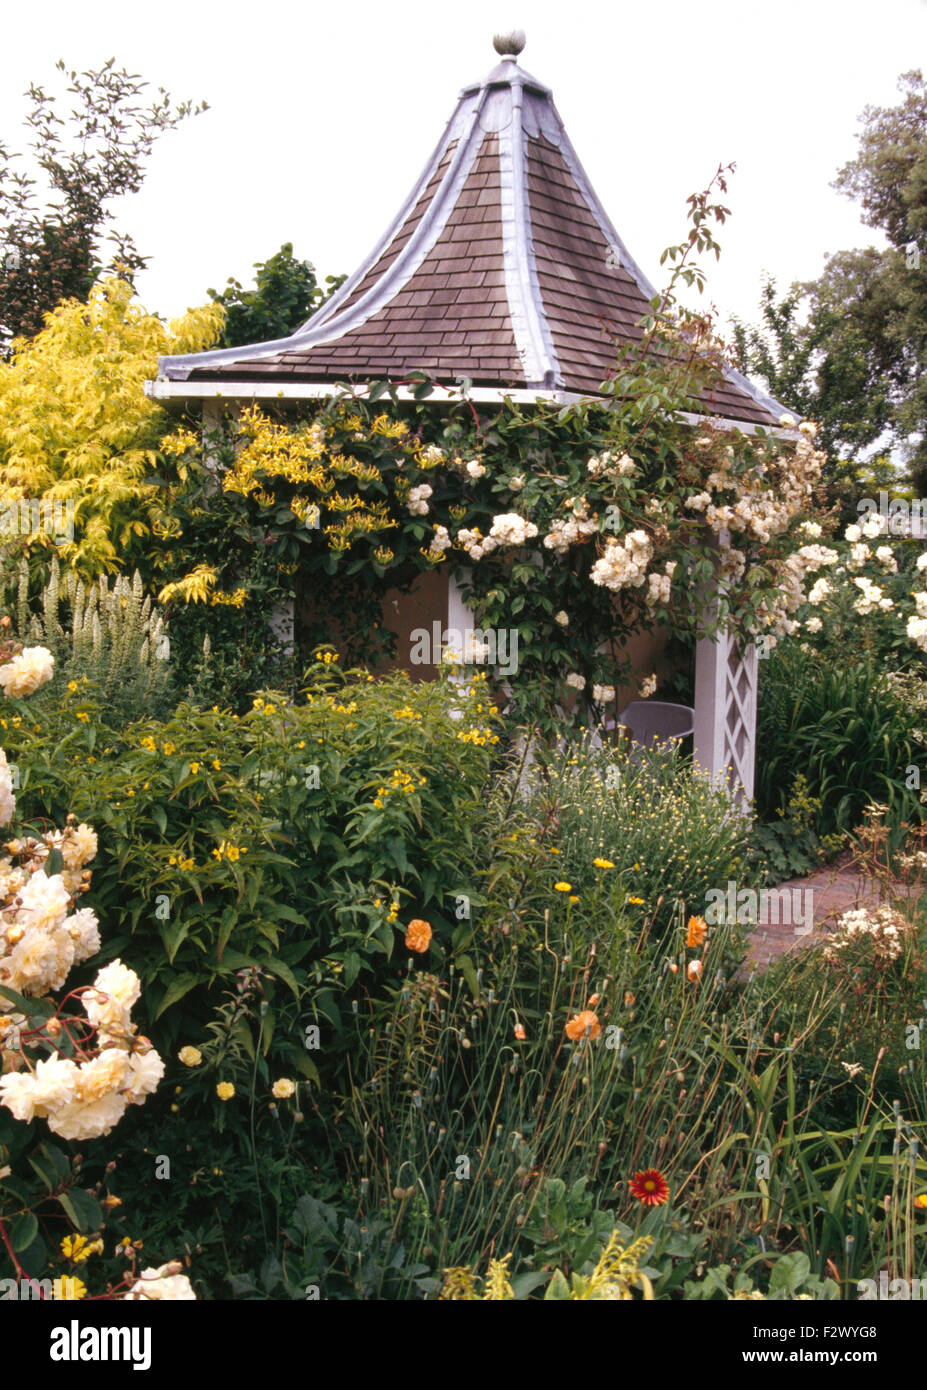 Rose bianche su gazebo esagonale con tetto di tegole in paese grande giardino in estate Foto Stock